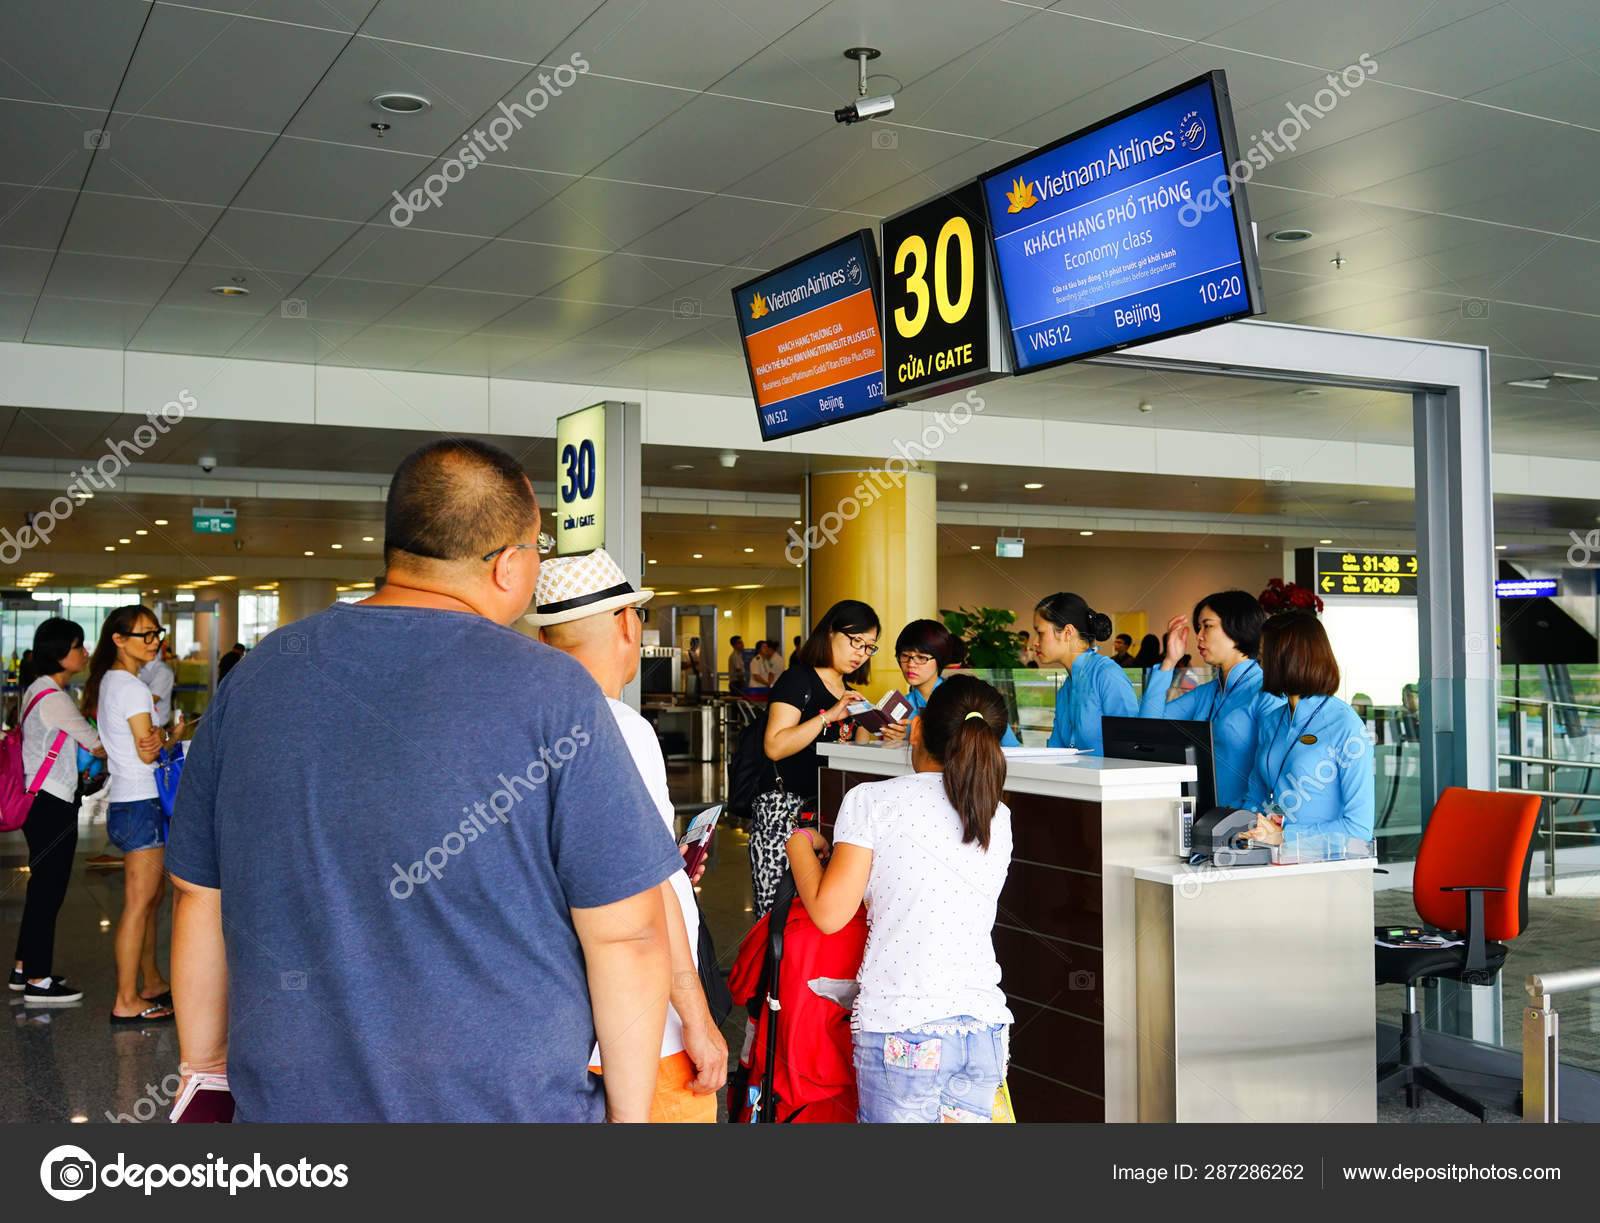 Аэропорт ханоя «ной бай». отели рядом, терминалы, табло, как добраться — туристер.ру